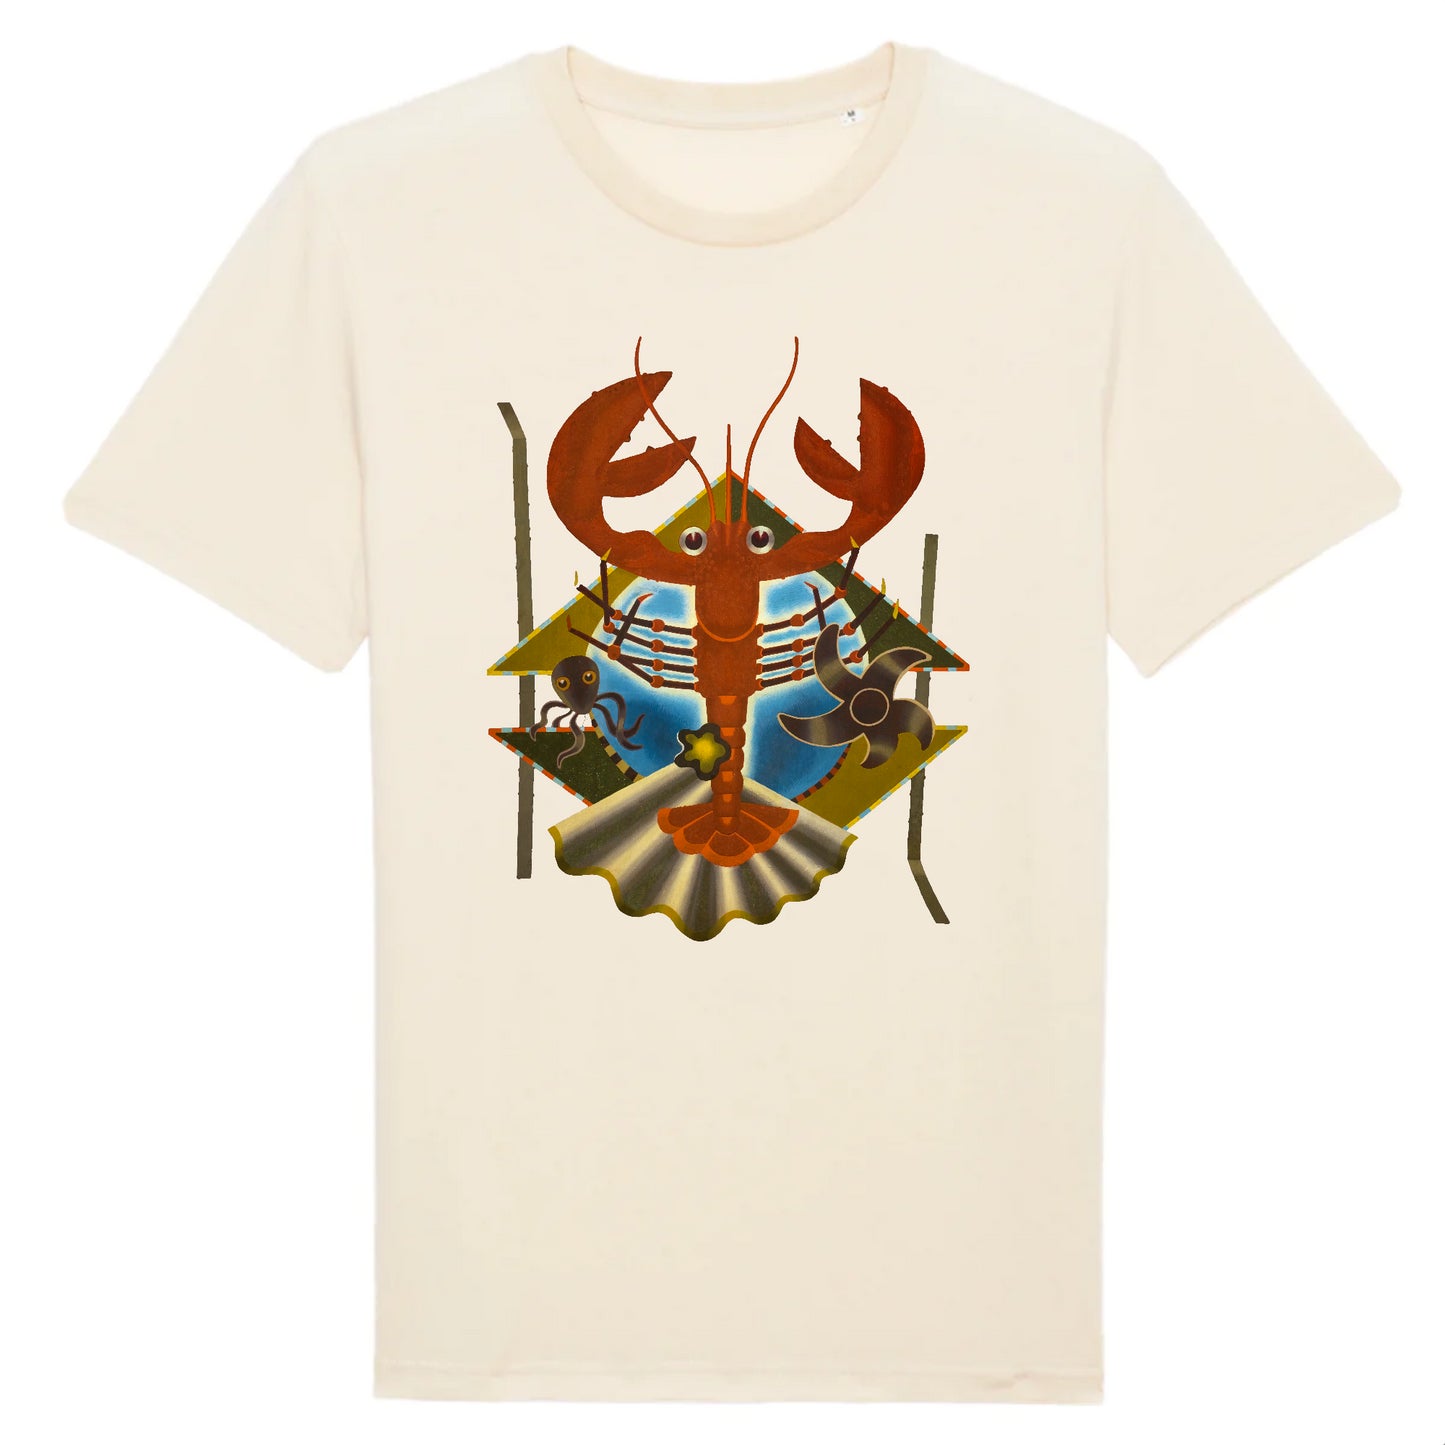 Semaphore by Edward Wadsworth, c.1937 - Organic Cotton T-Shirt